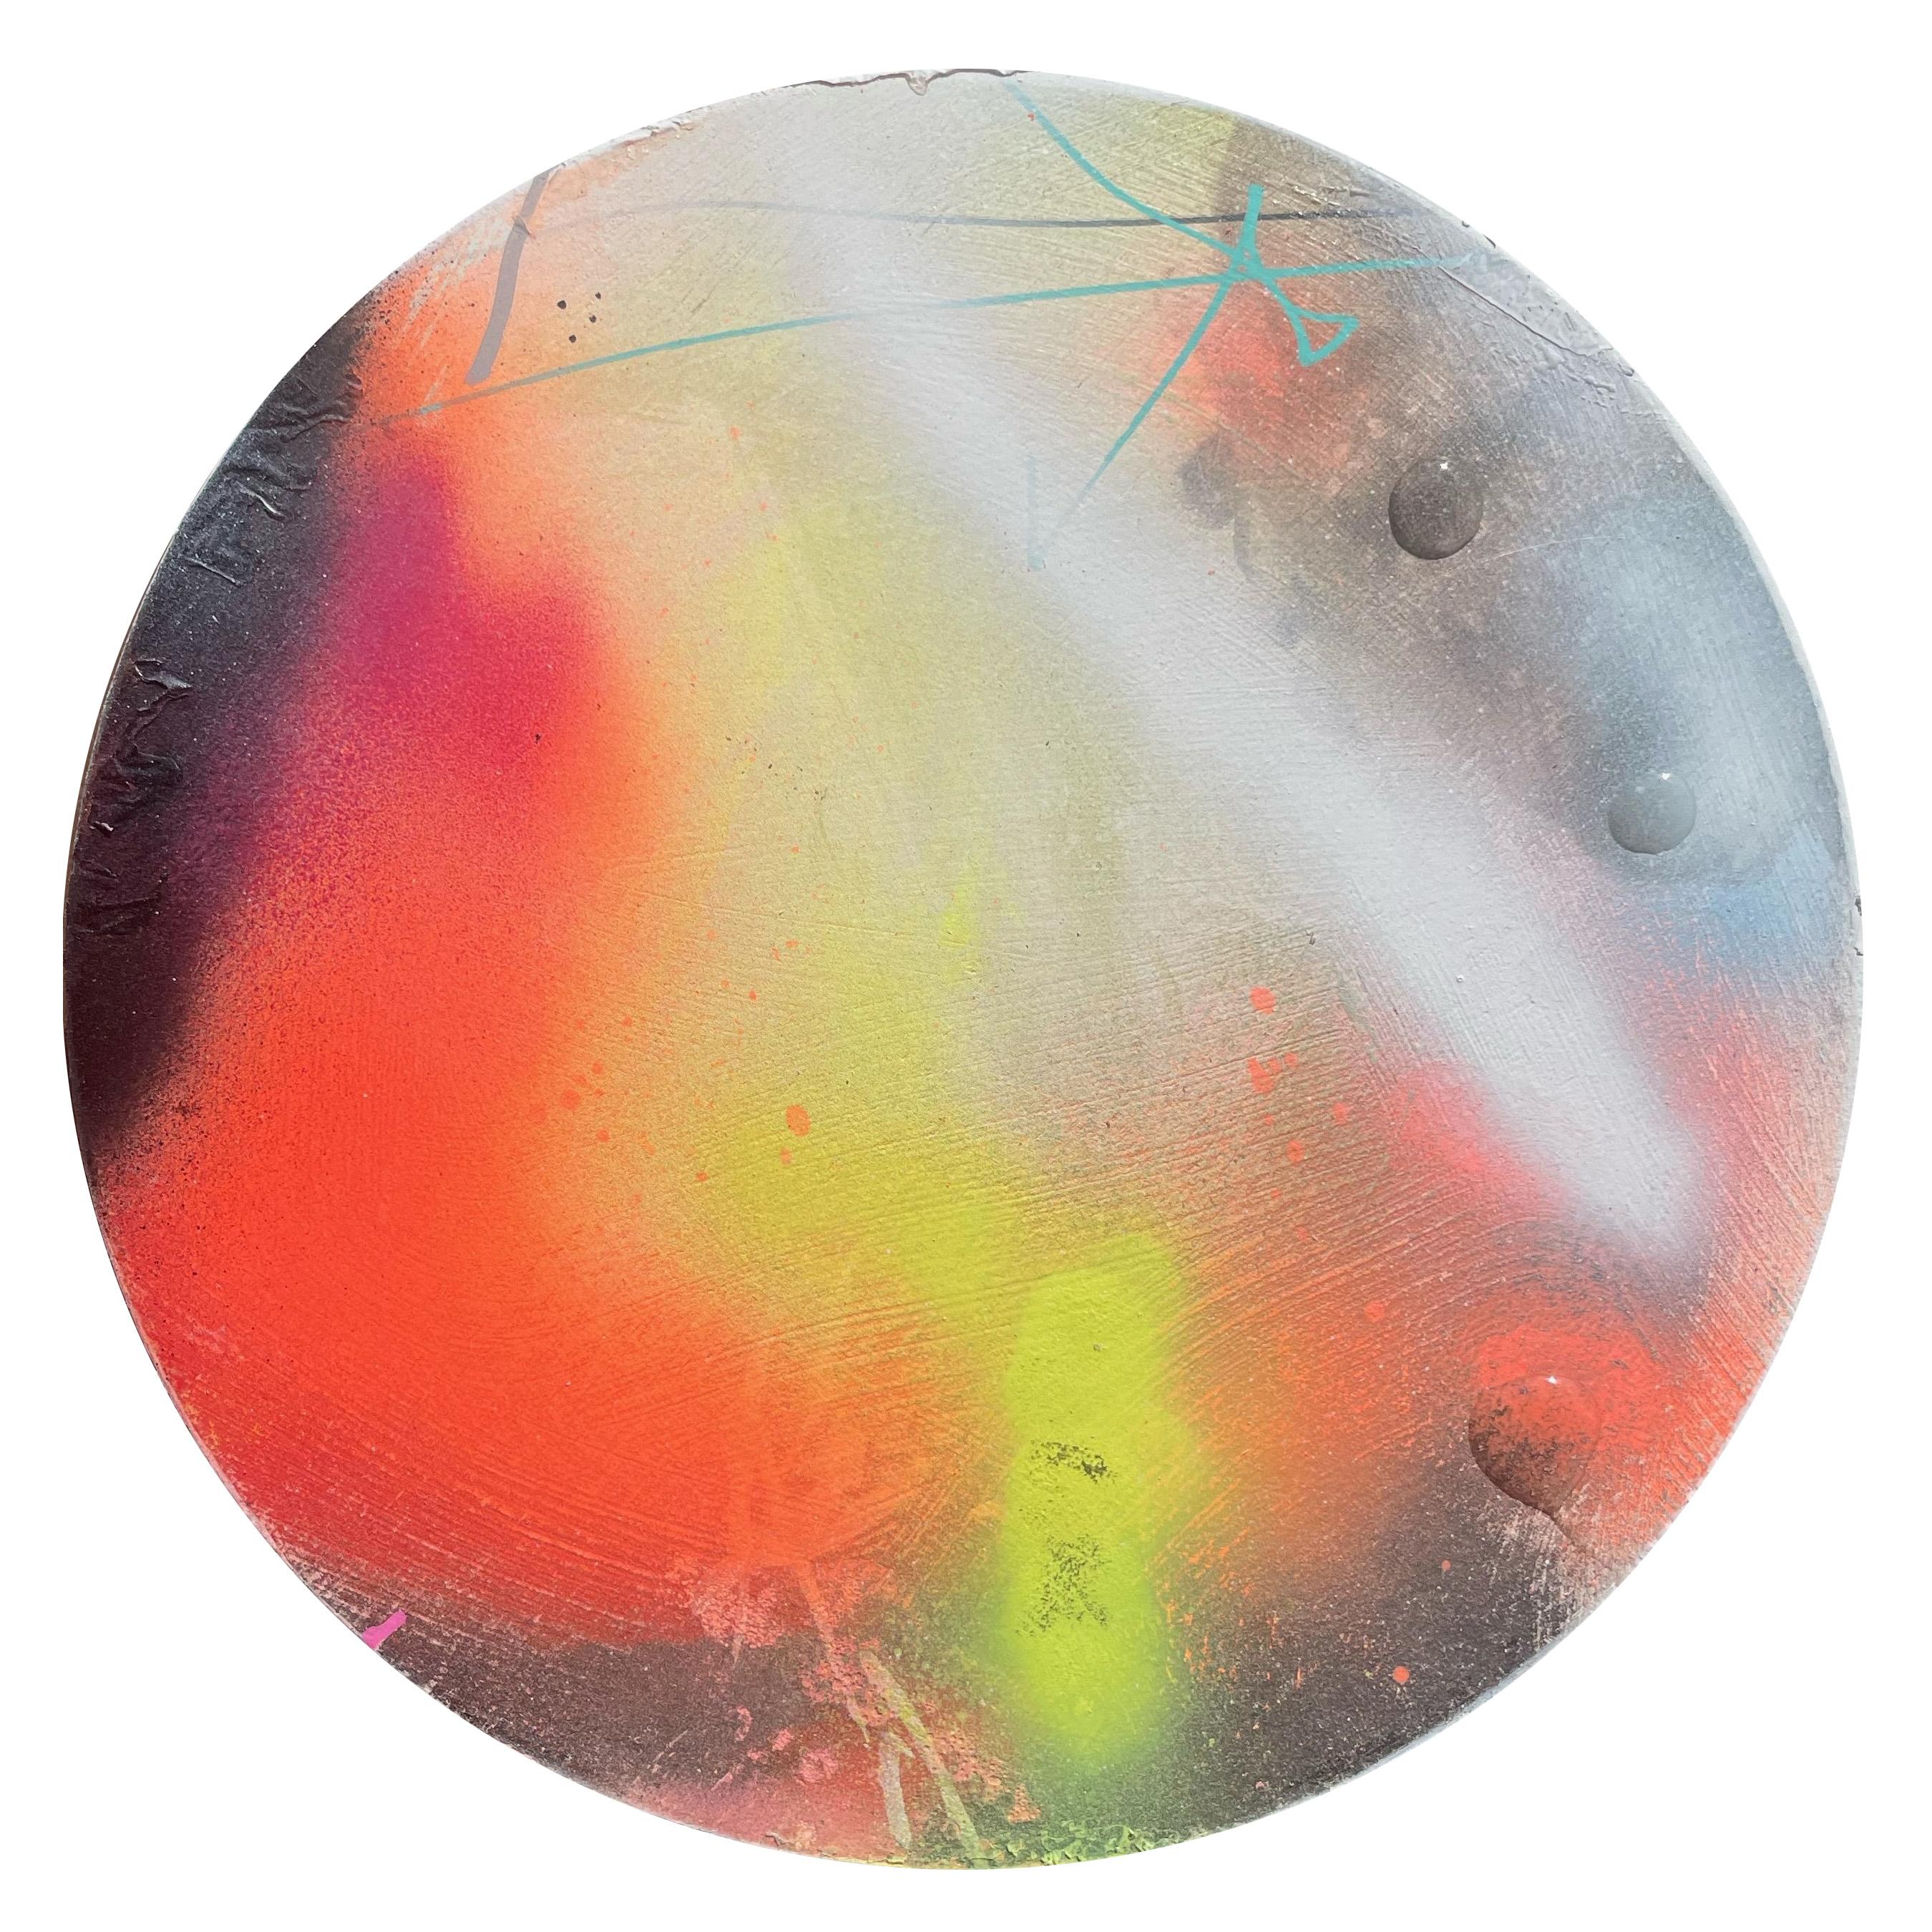 "Perlende Tautropfen 2" Zeitgenössische farbenfrohe abstrakte kreisförmige Malerei